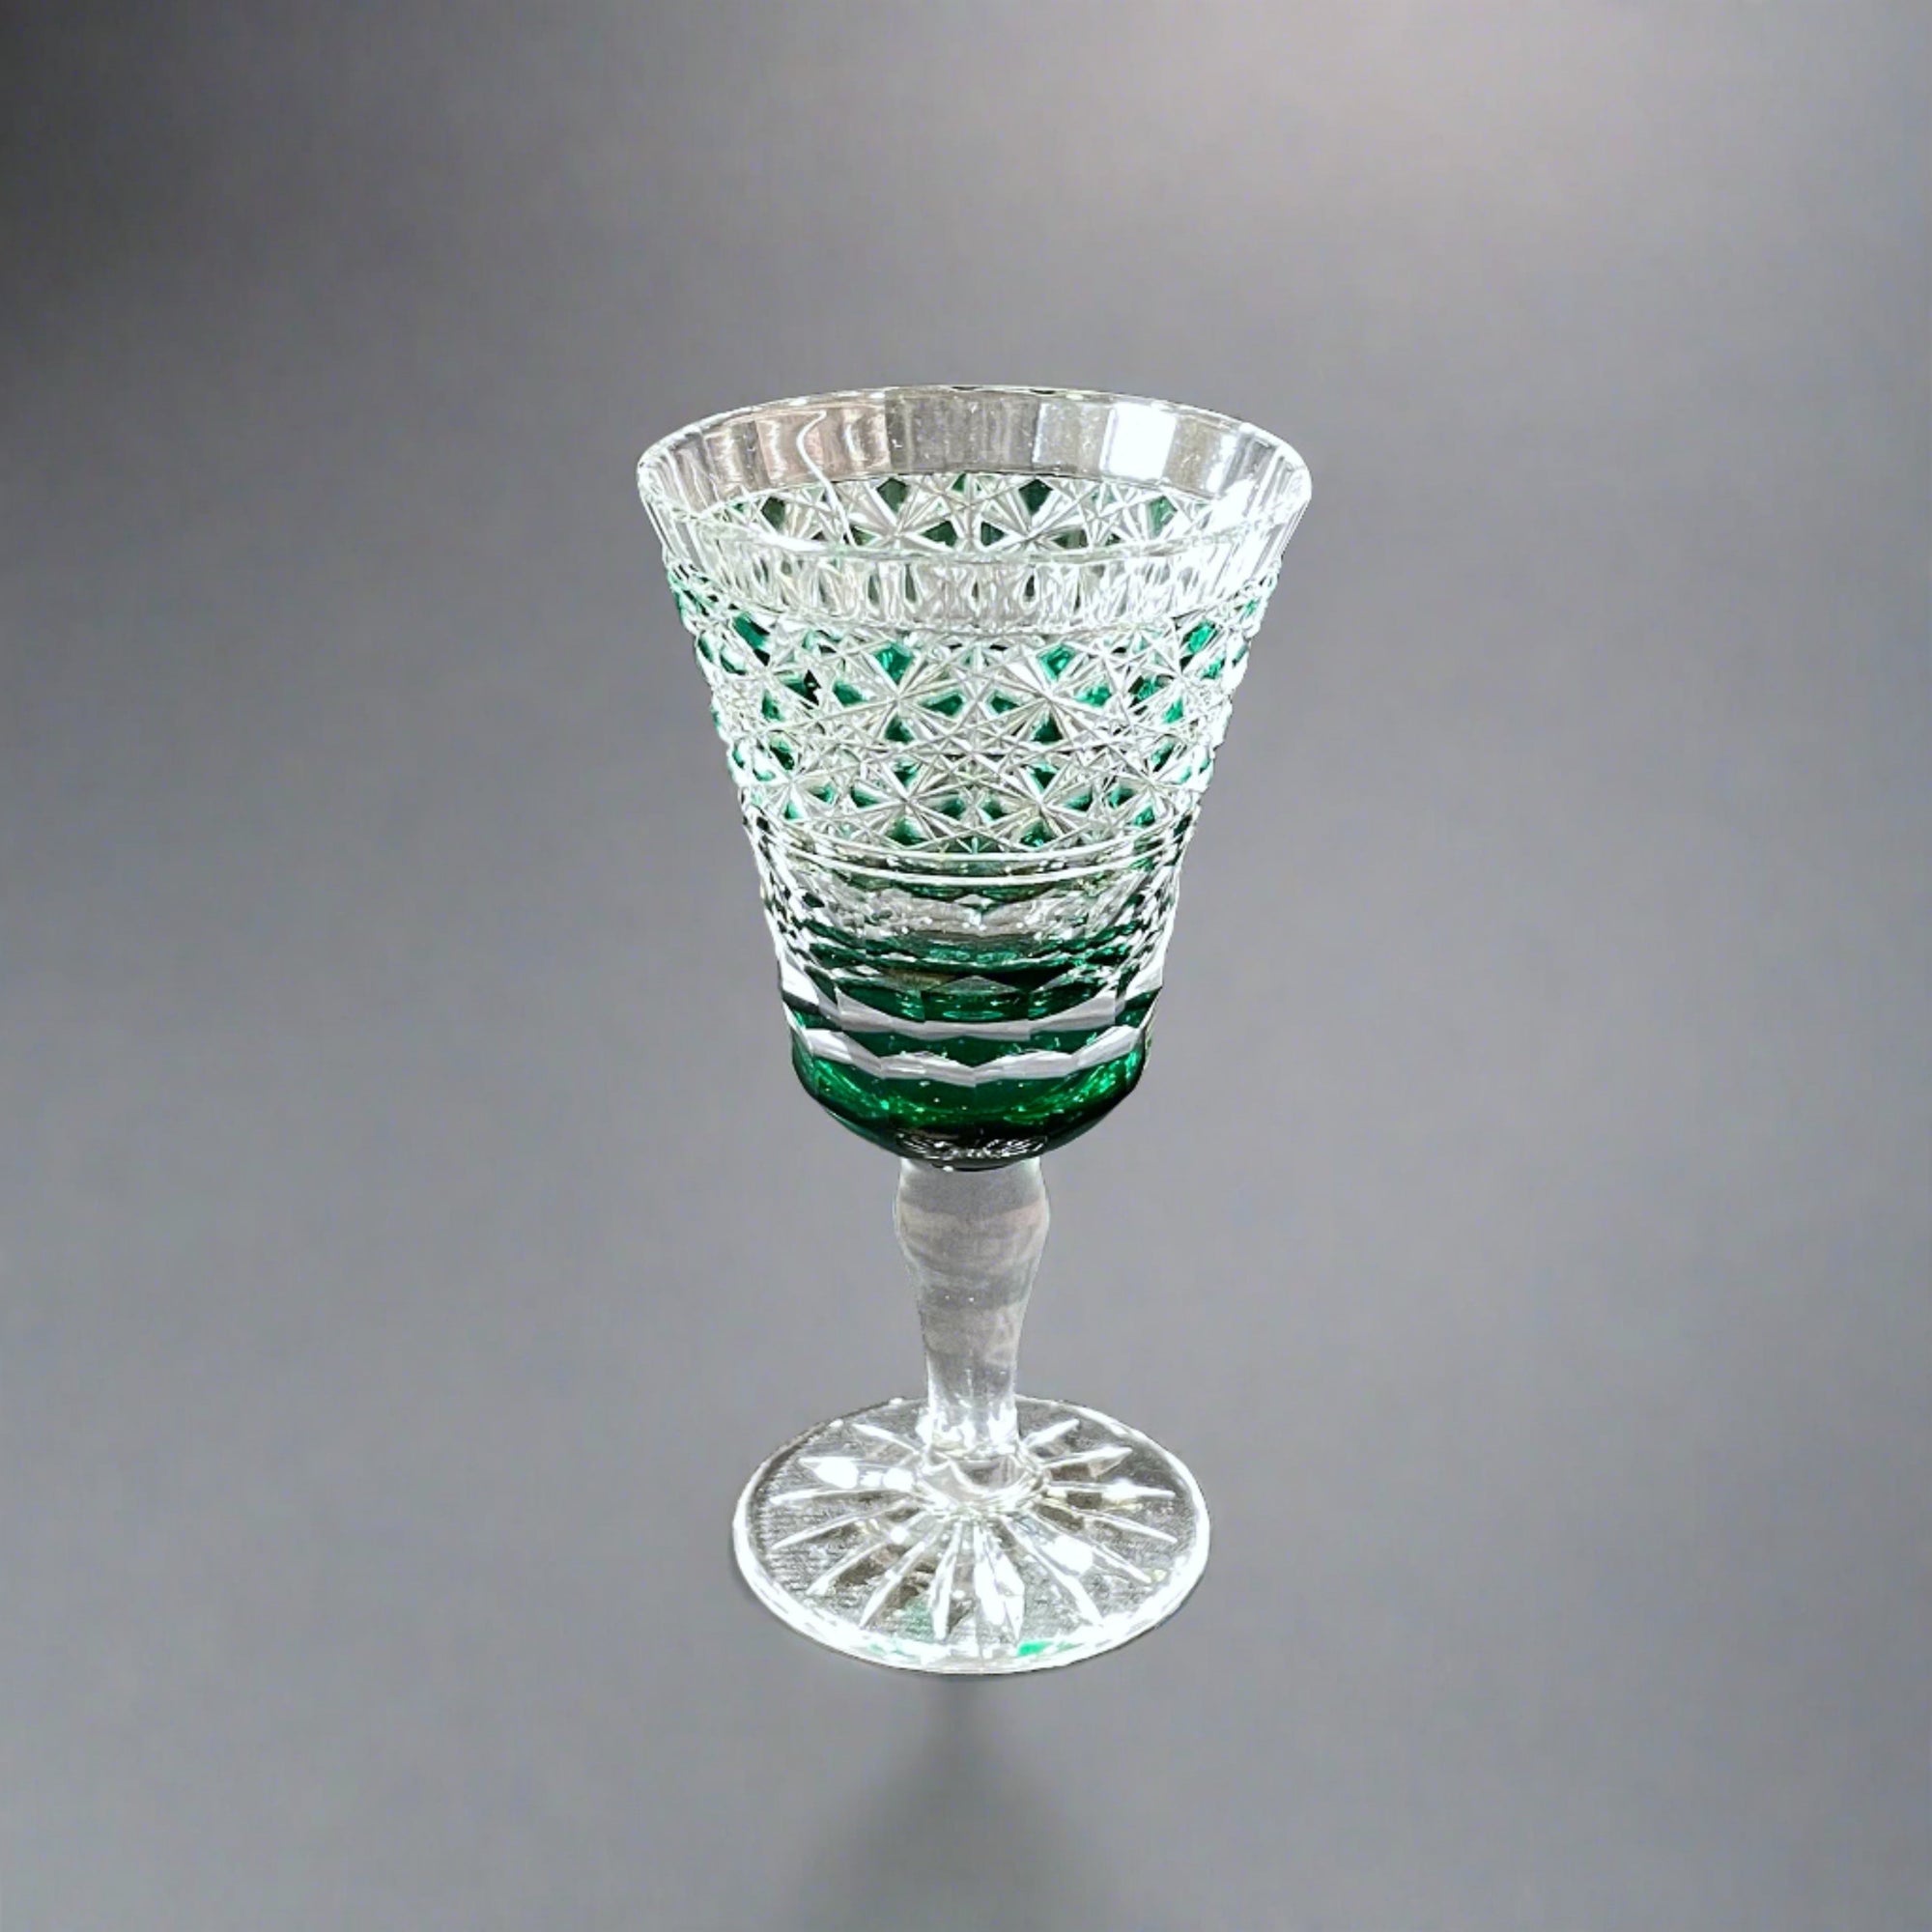 Edo Kiriko Sake Glass by Toshio Tanizawa